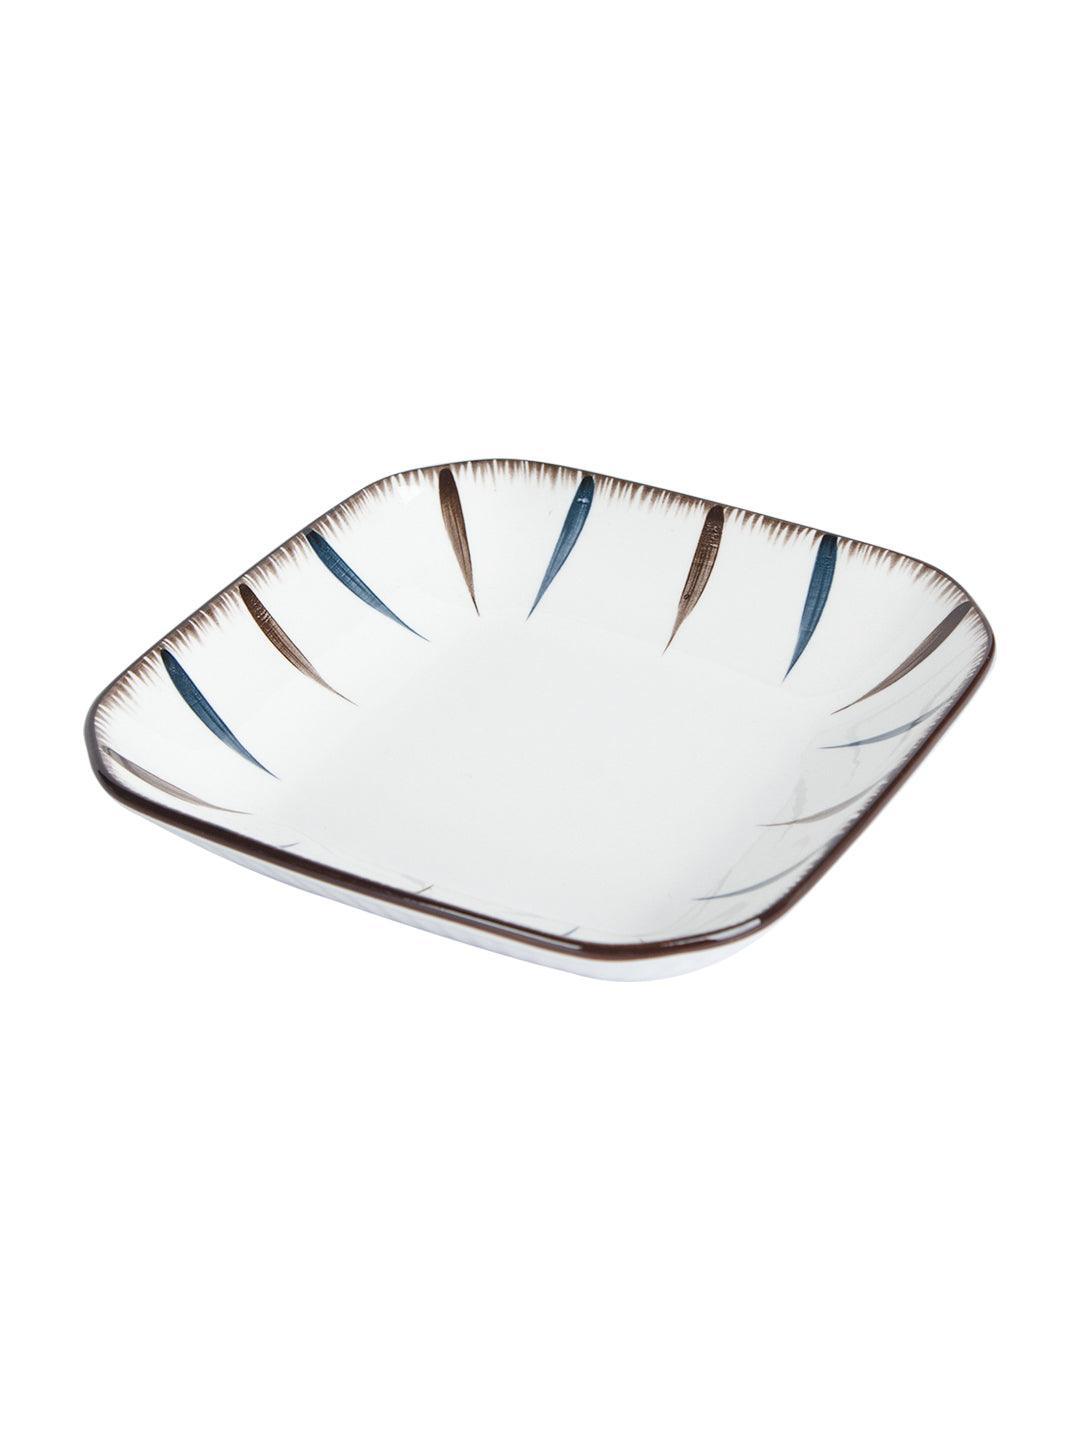 Market 99 Round Serveware Ceramic Dinner Plates - MARKET 99